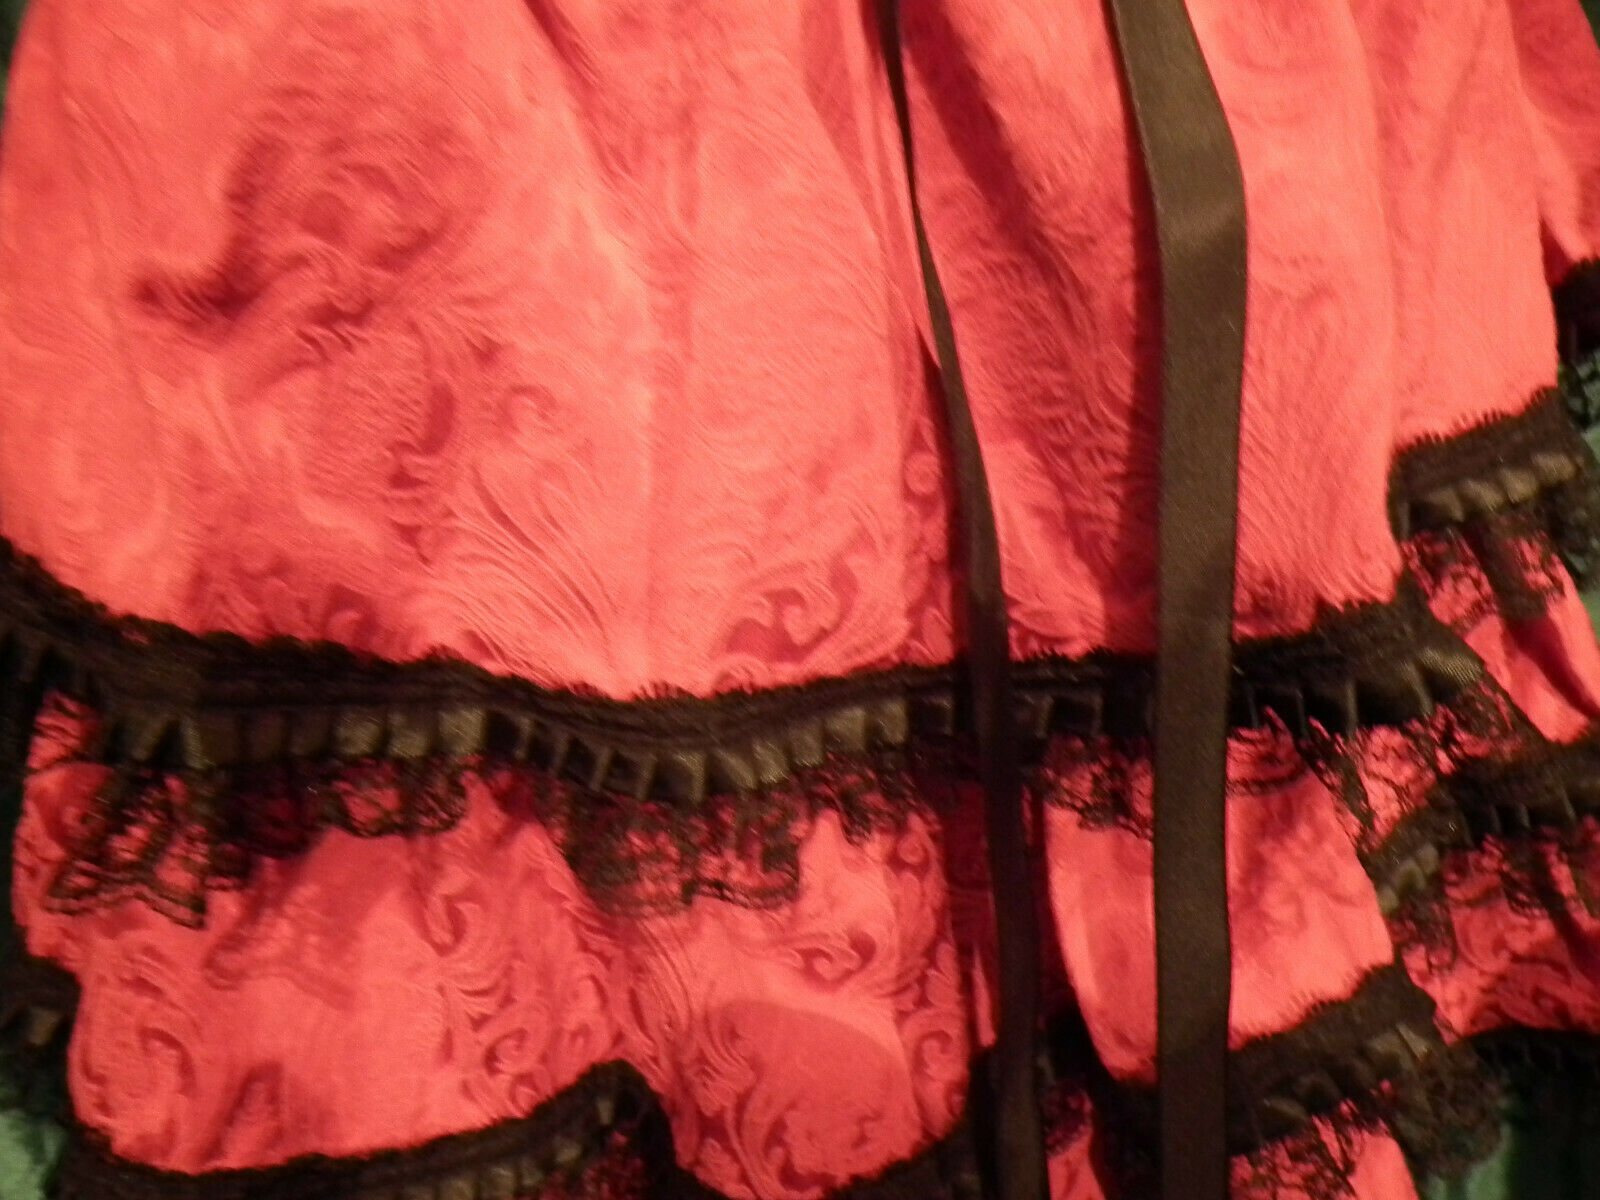 NEW Phaze Clothing Beautiful saloon STYLE, LAYERS Red Black skirt Size XLSize 16 phaze clothing